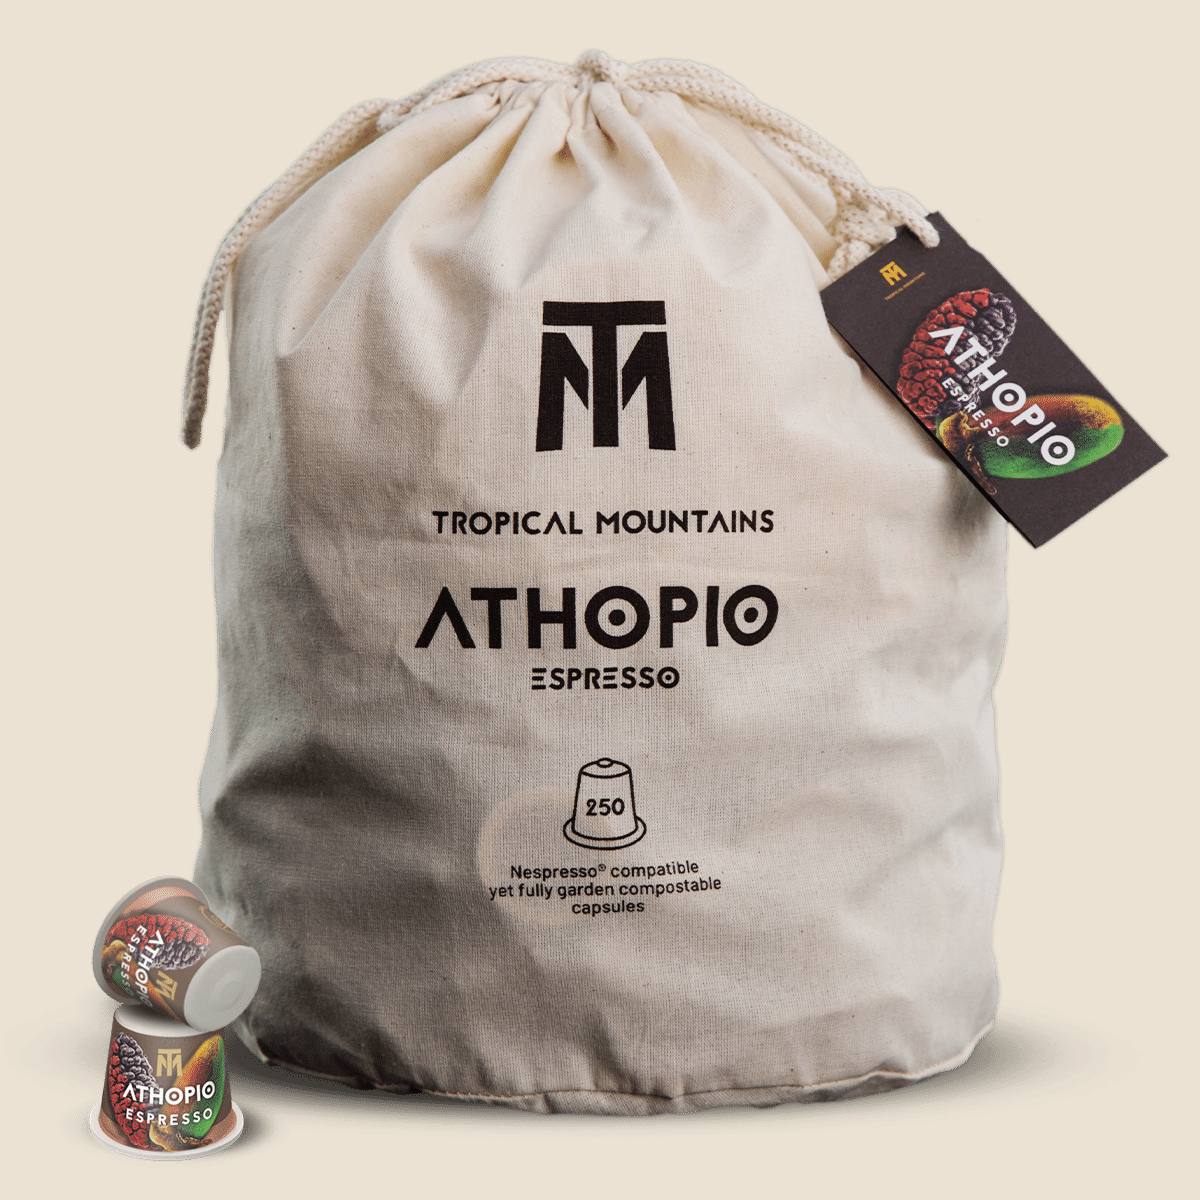 ATHOPIO Espresso Organic Fair Trade Coffee Capsules refill bag